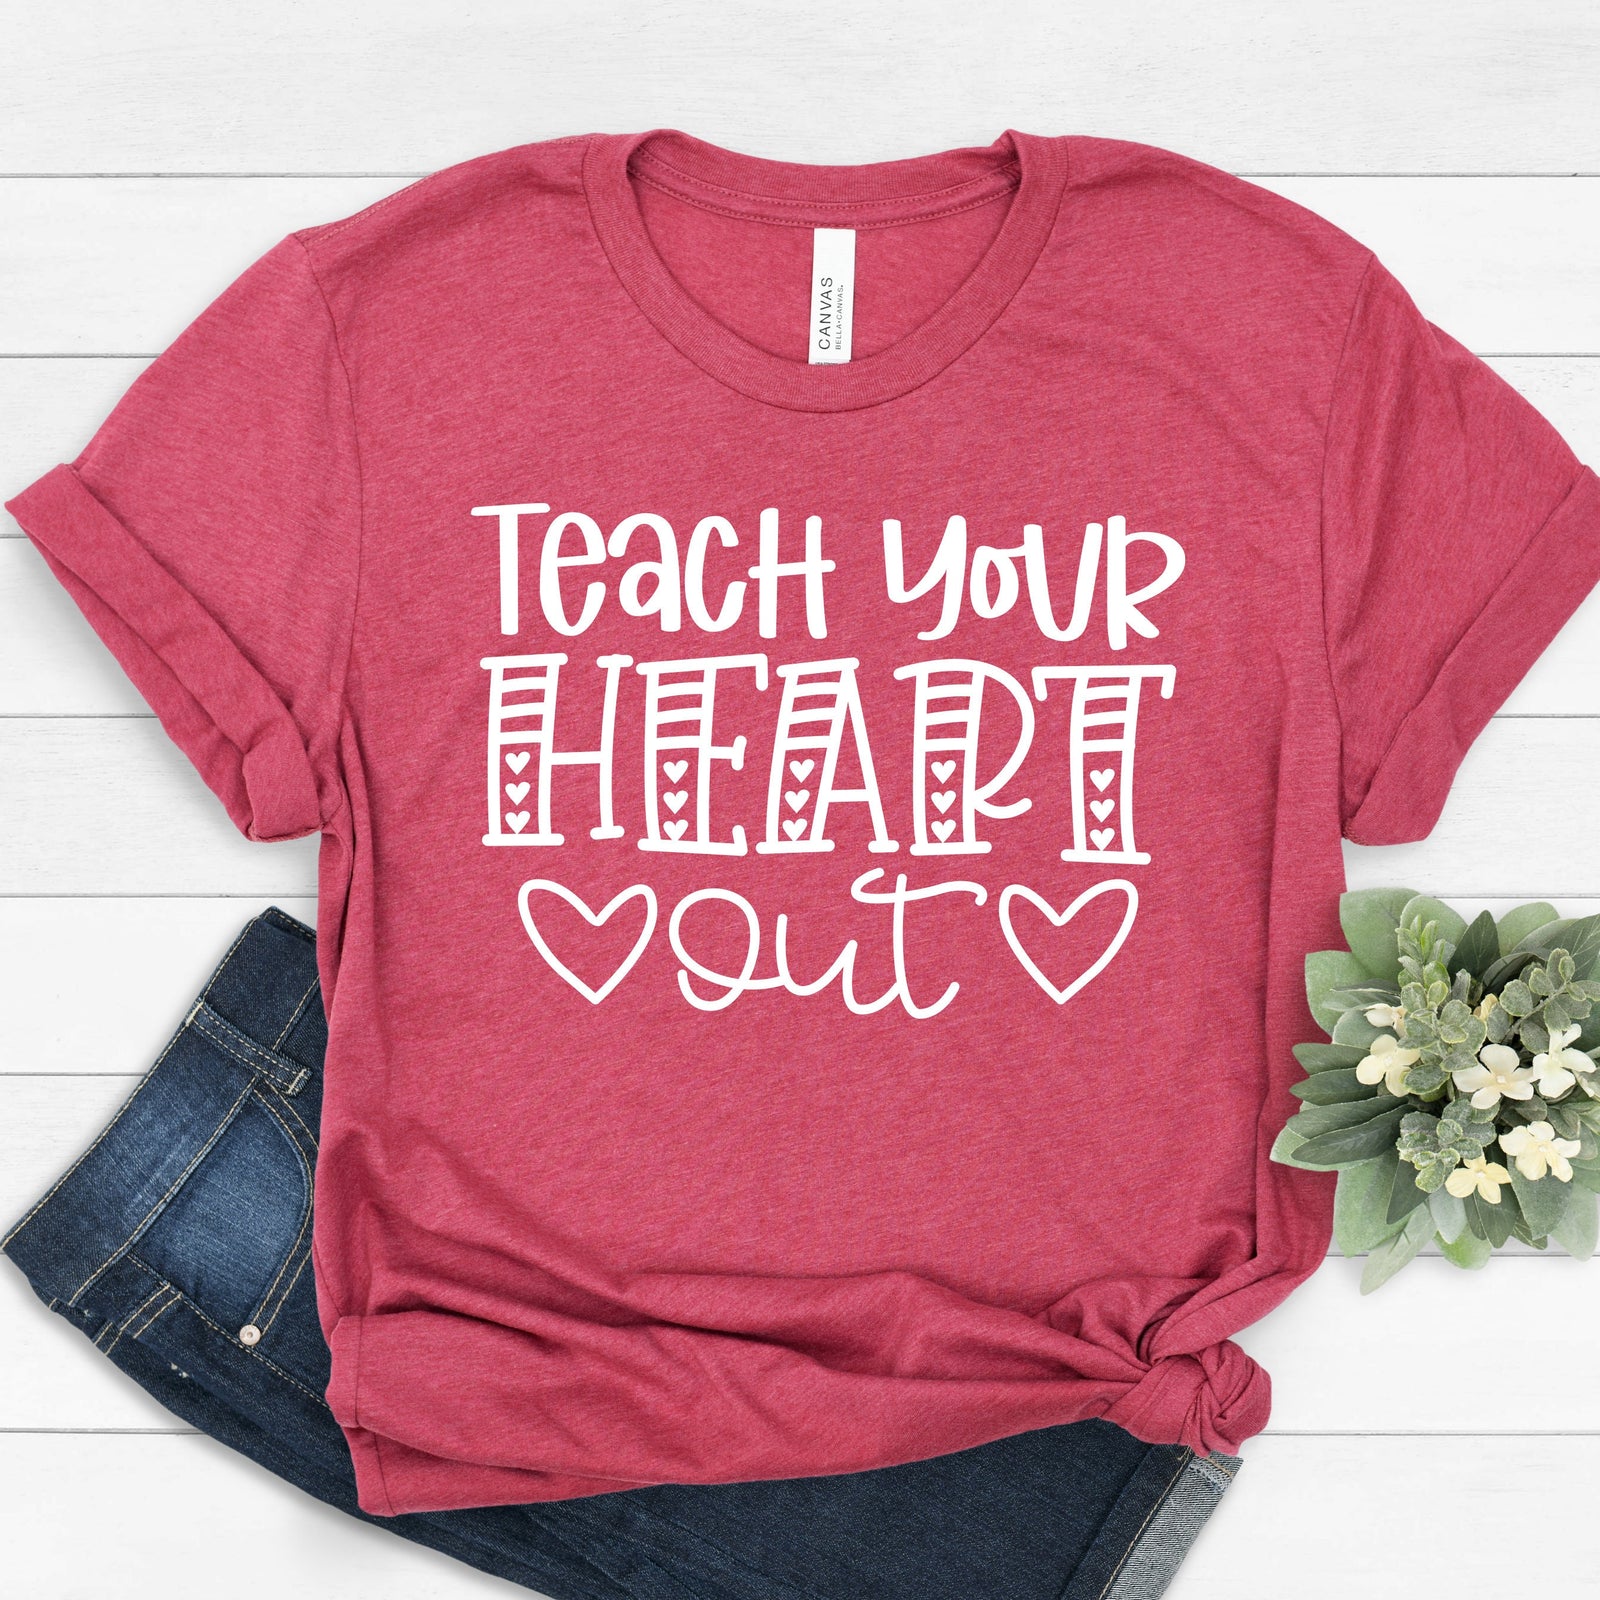 Teach your Heart Out T Shirt - Teacher Unisex Shirts - Gift for Teachers